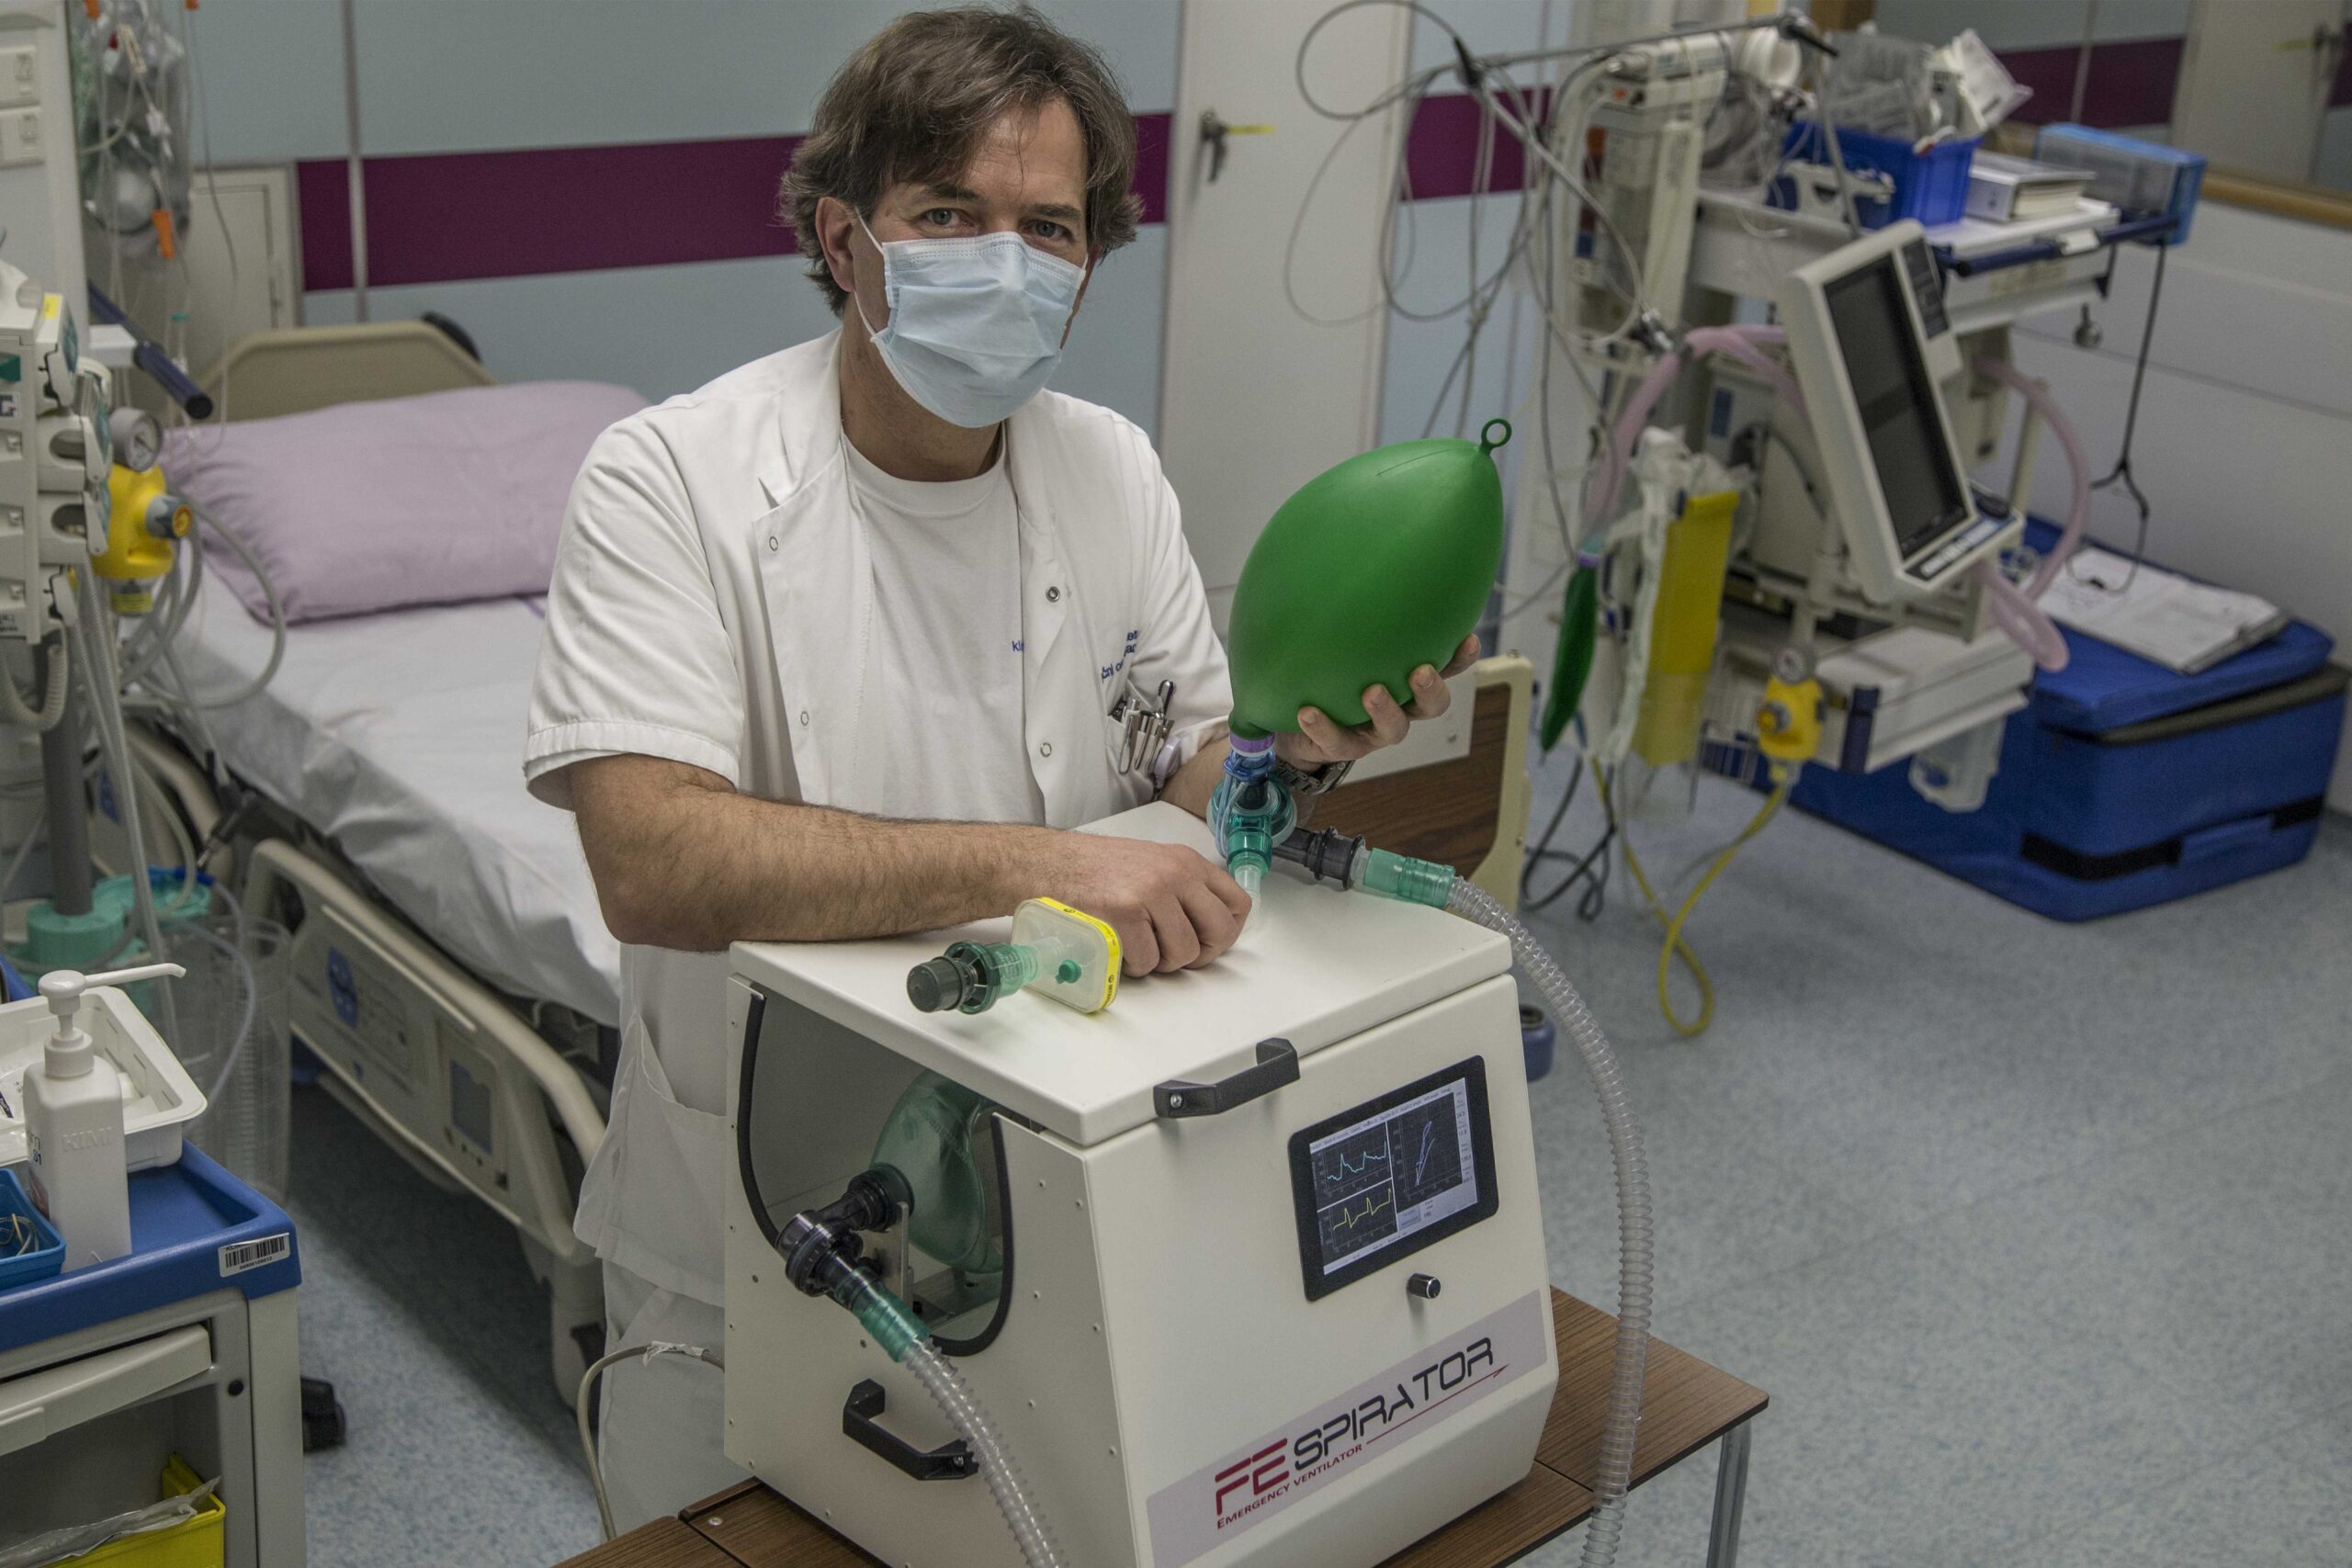 Anesteziolog Kontestabile obžaluje izjavo, “da so čistilke na uro bolje plačane, kot je sam”